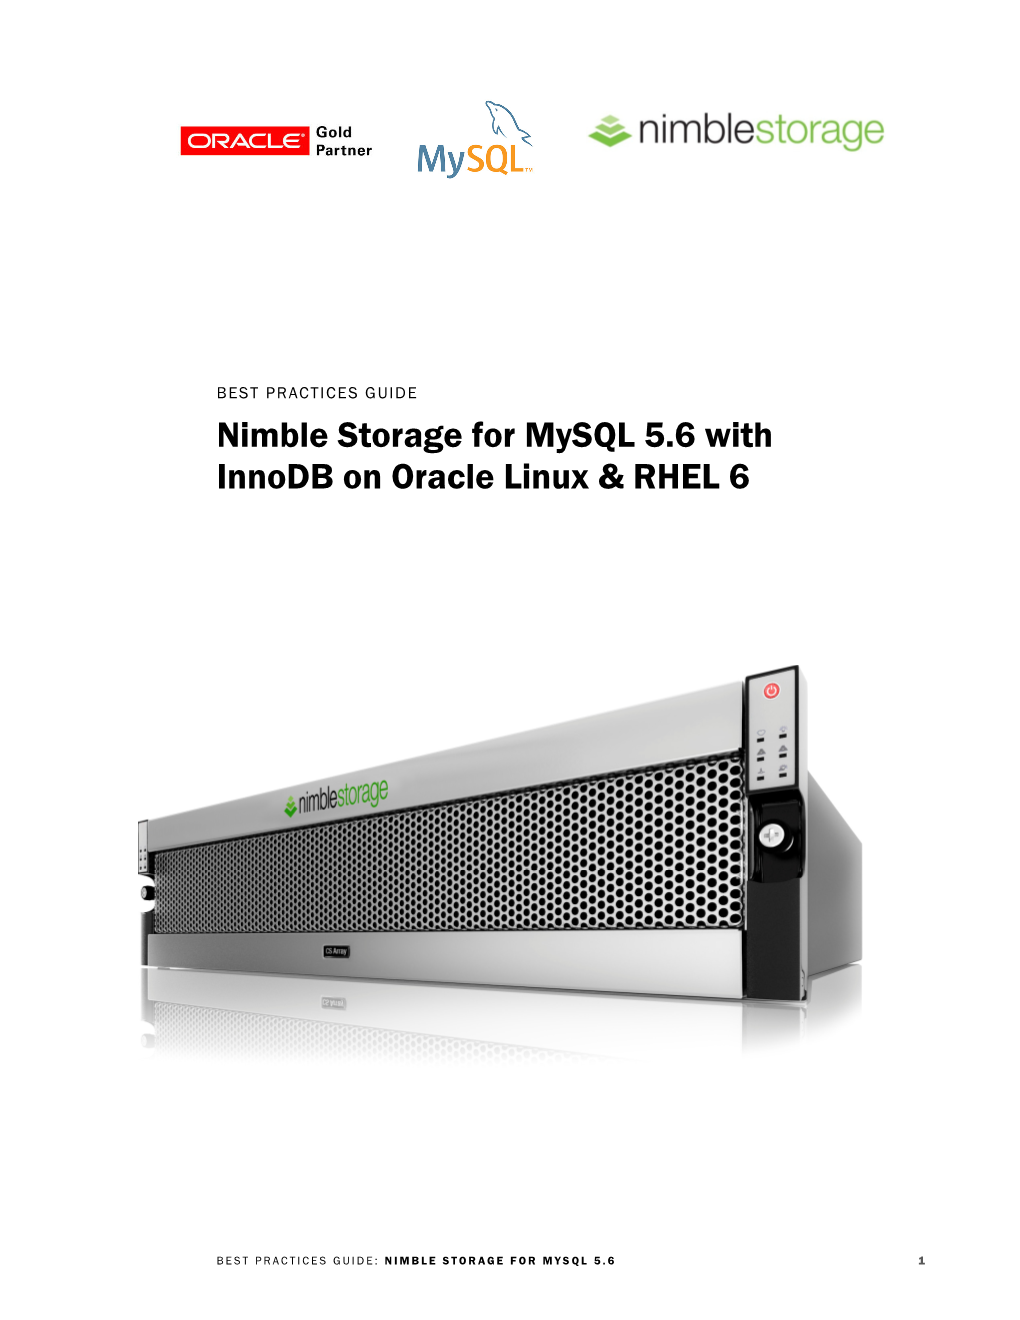 Nimble Storage for Mysql 5.6 with Innodb on Oracle Linux & RHEL 6